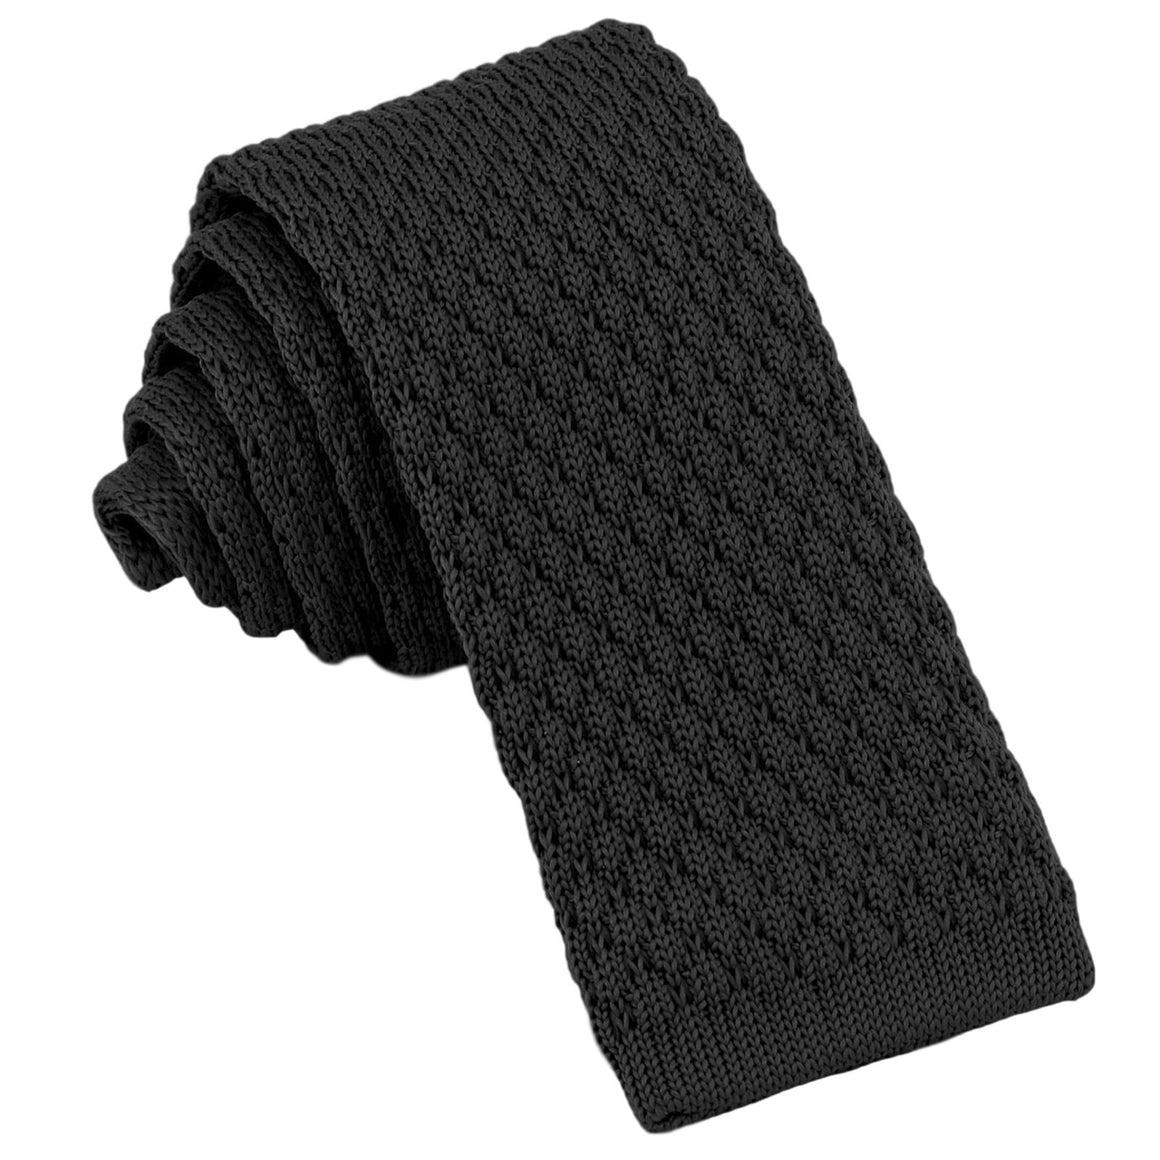 GASSANI Cravatta da uomo nera stretta 6cm in maglia, cravatta in lana, taglio dritto